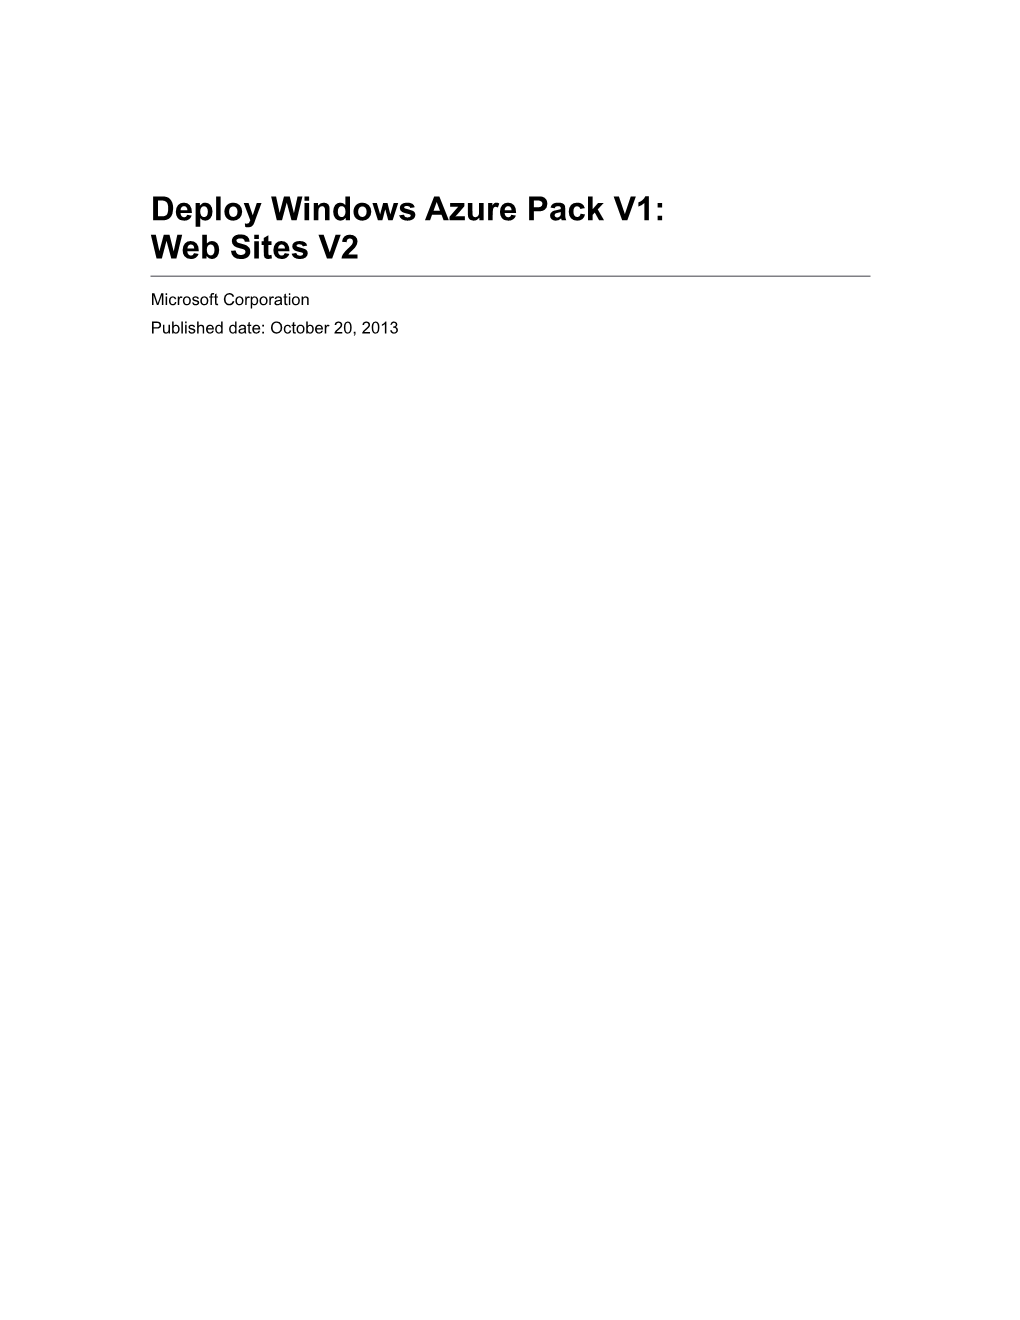 Deploy Windows Azure Pack V1: Web Sites V2